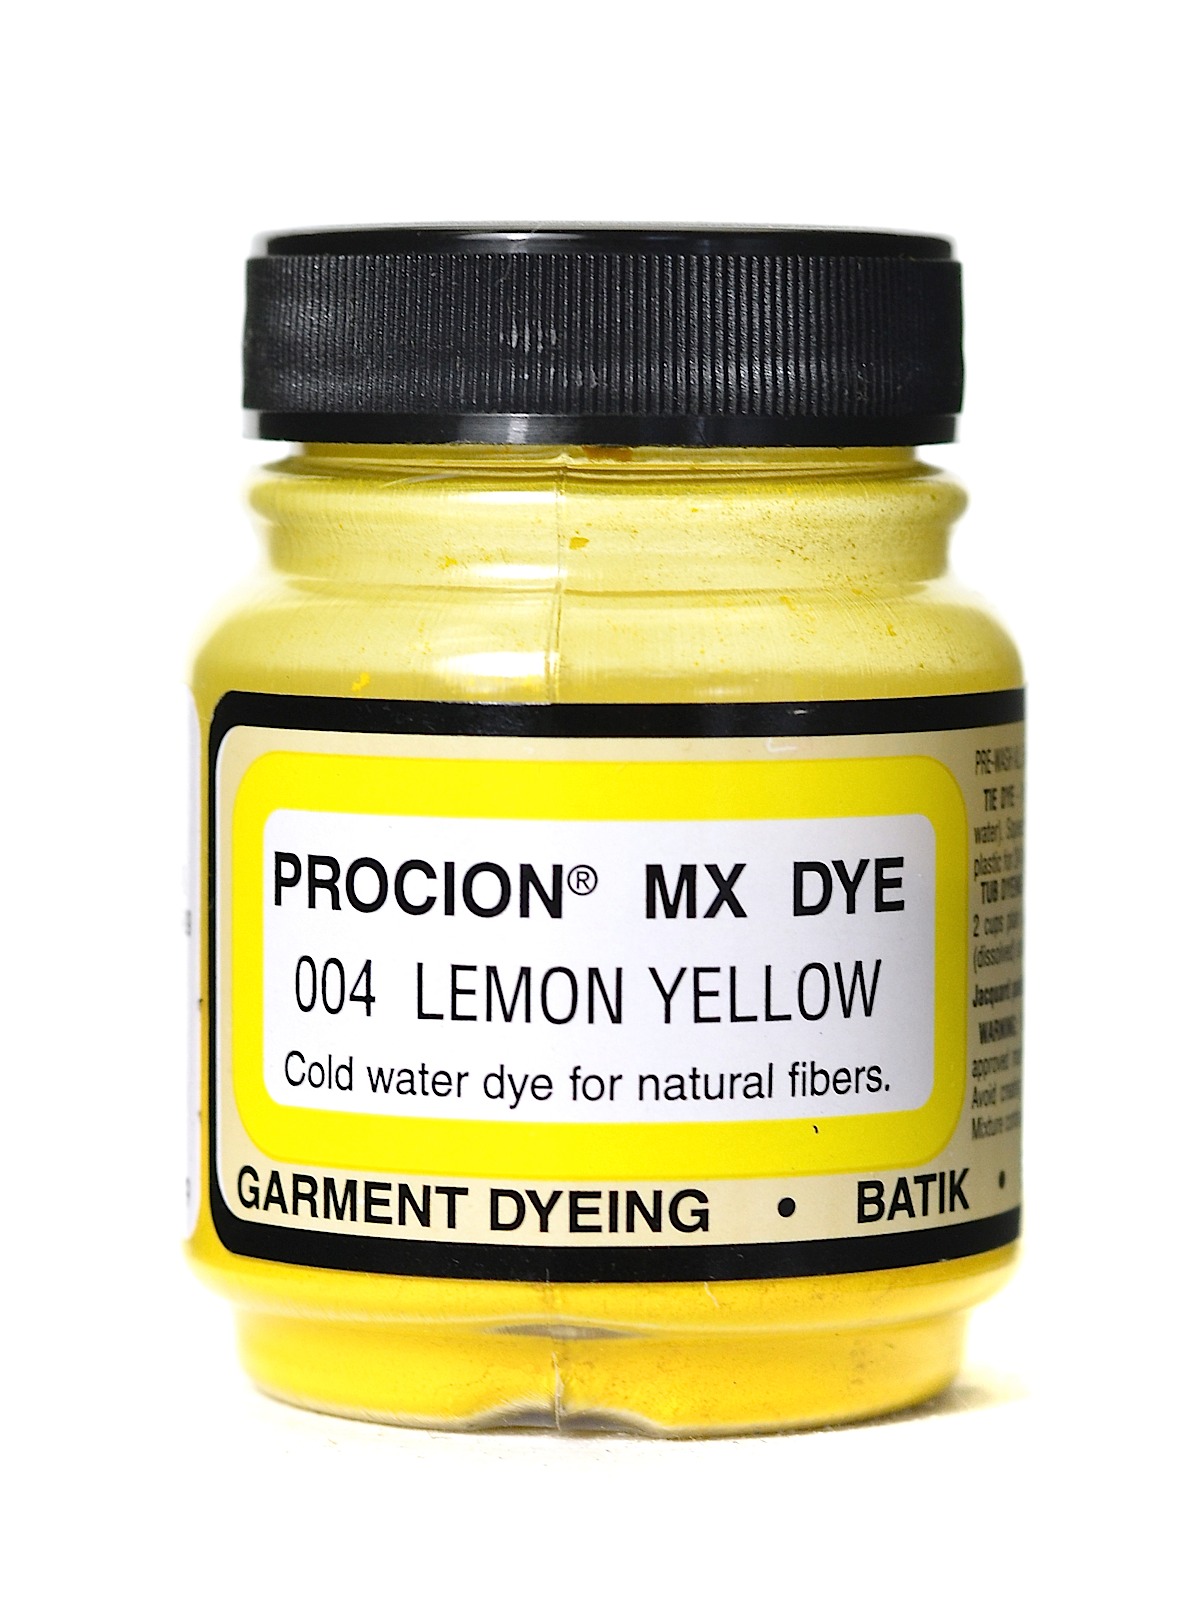 Procion MX Fiber Reactive Dye Lemon Yellow 004 2 3 Oz.